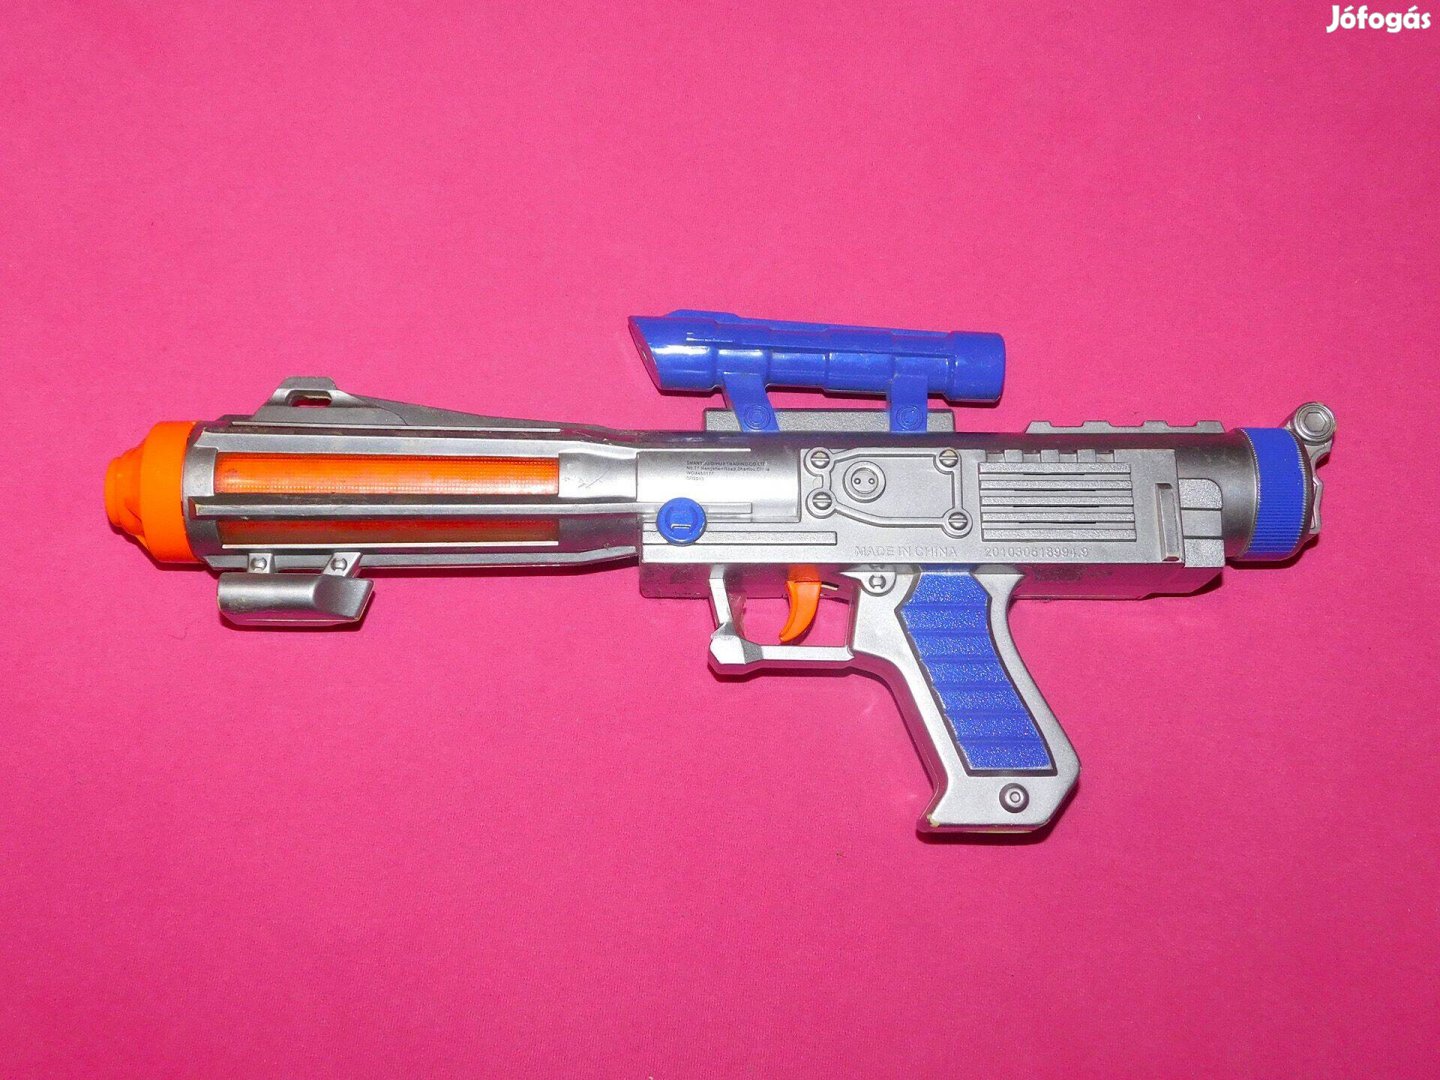 Játék fegyver, puska, pisztoly, hangot is ad, 40 cm